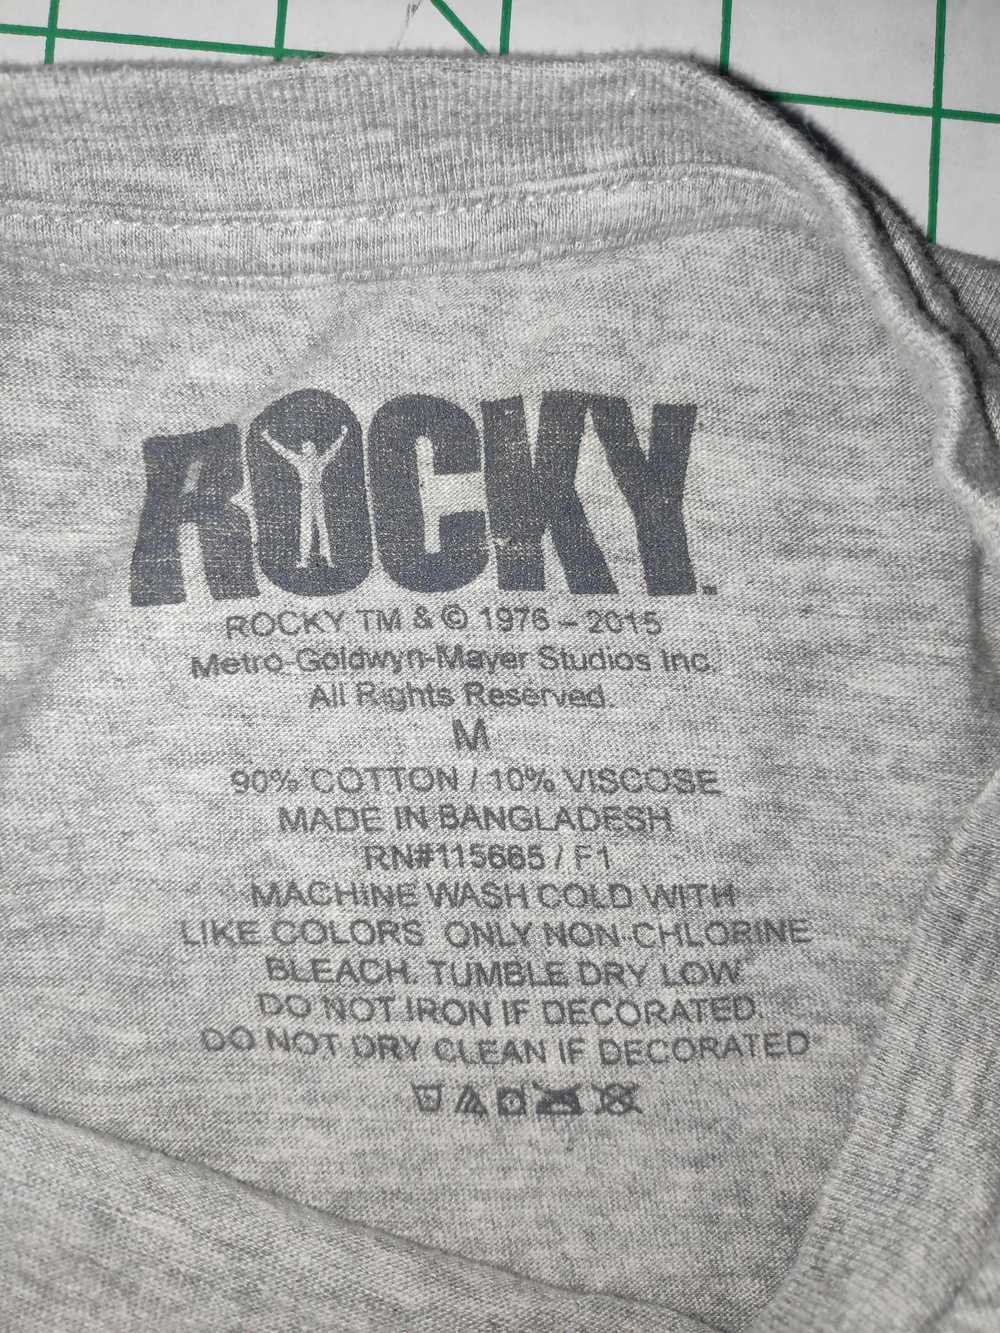 Movie Vintage Rocky Balboa T-Shirt - image 3